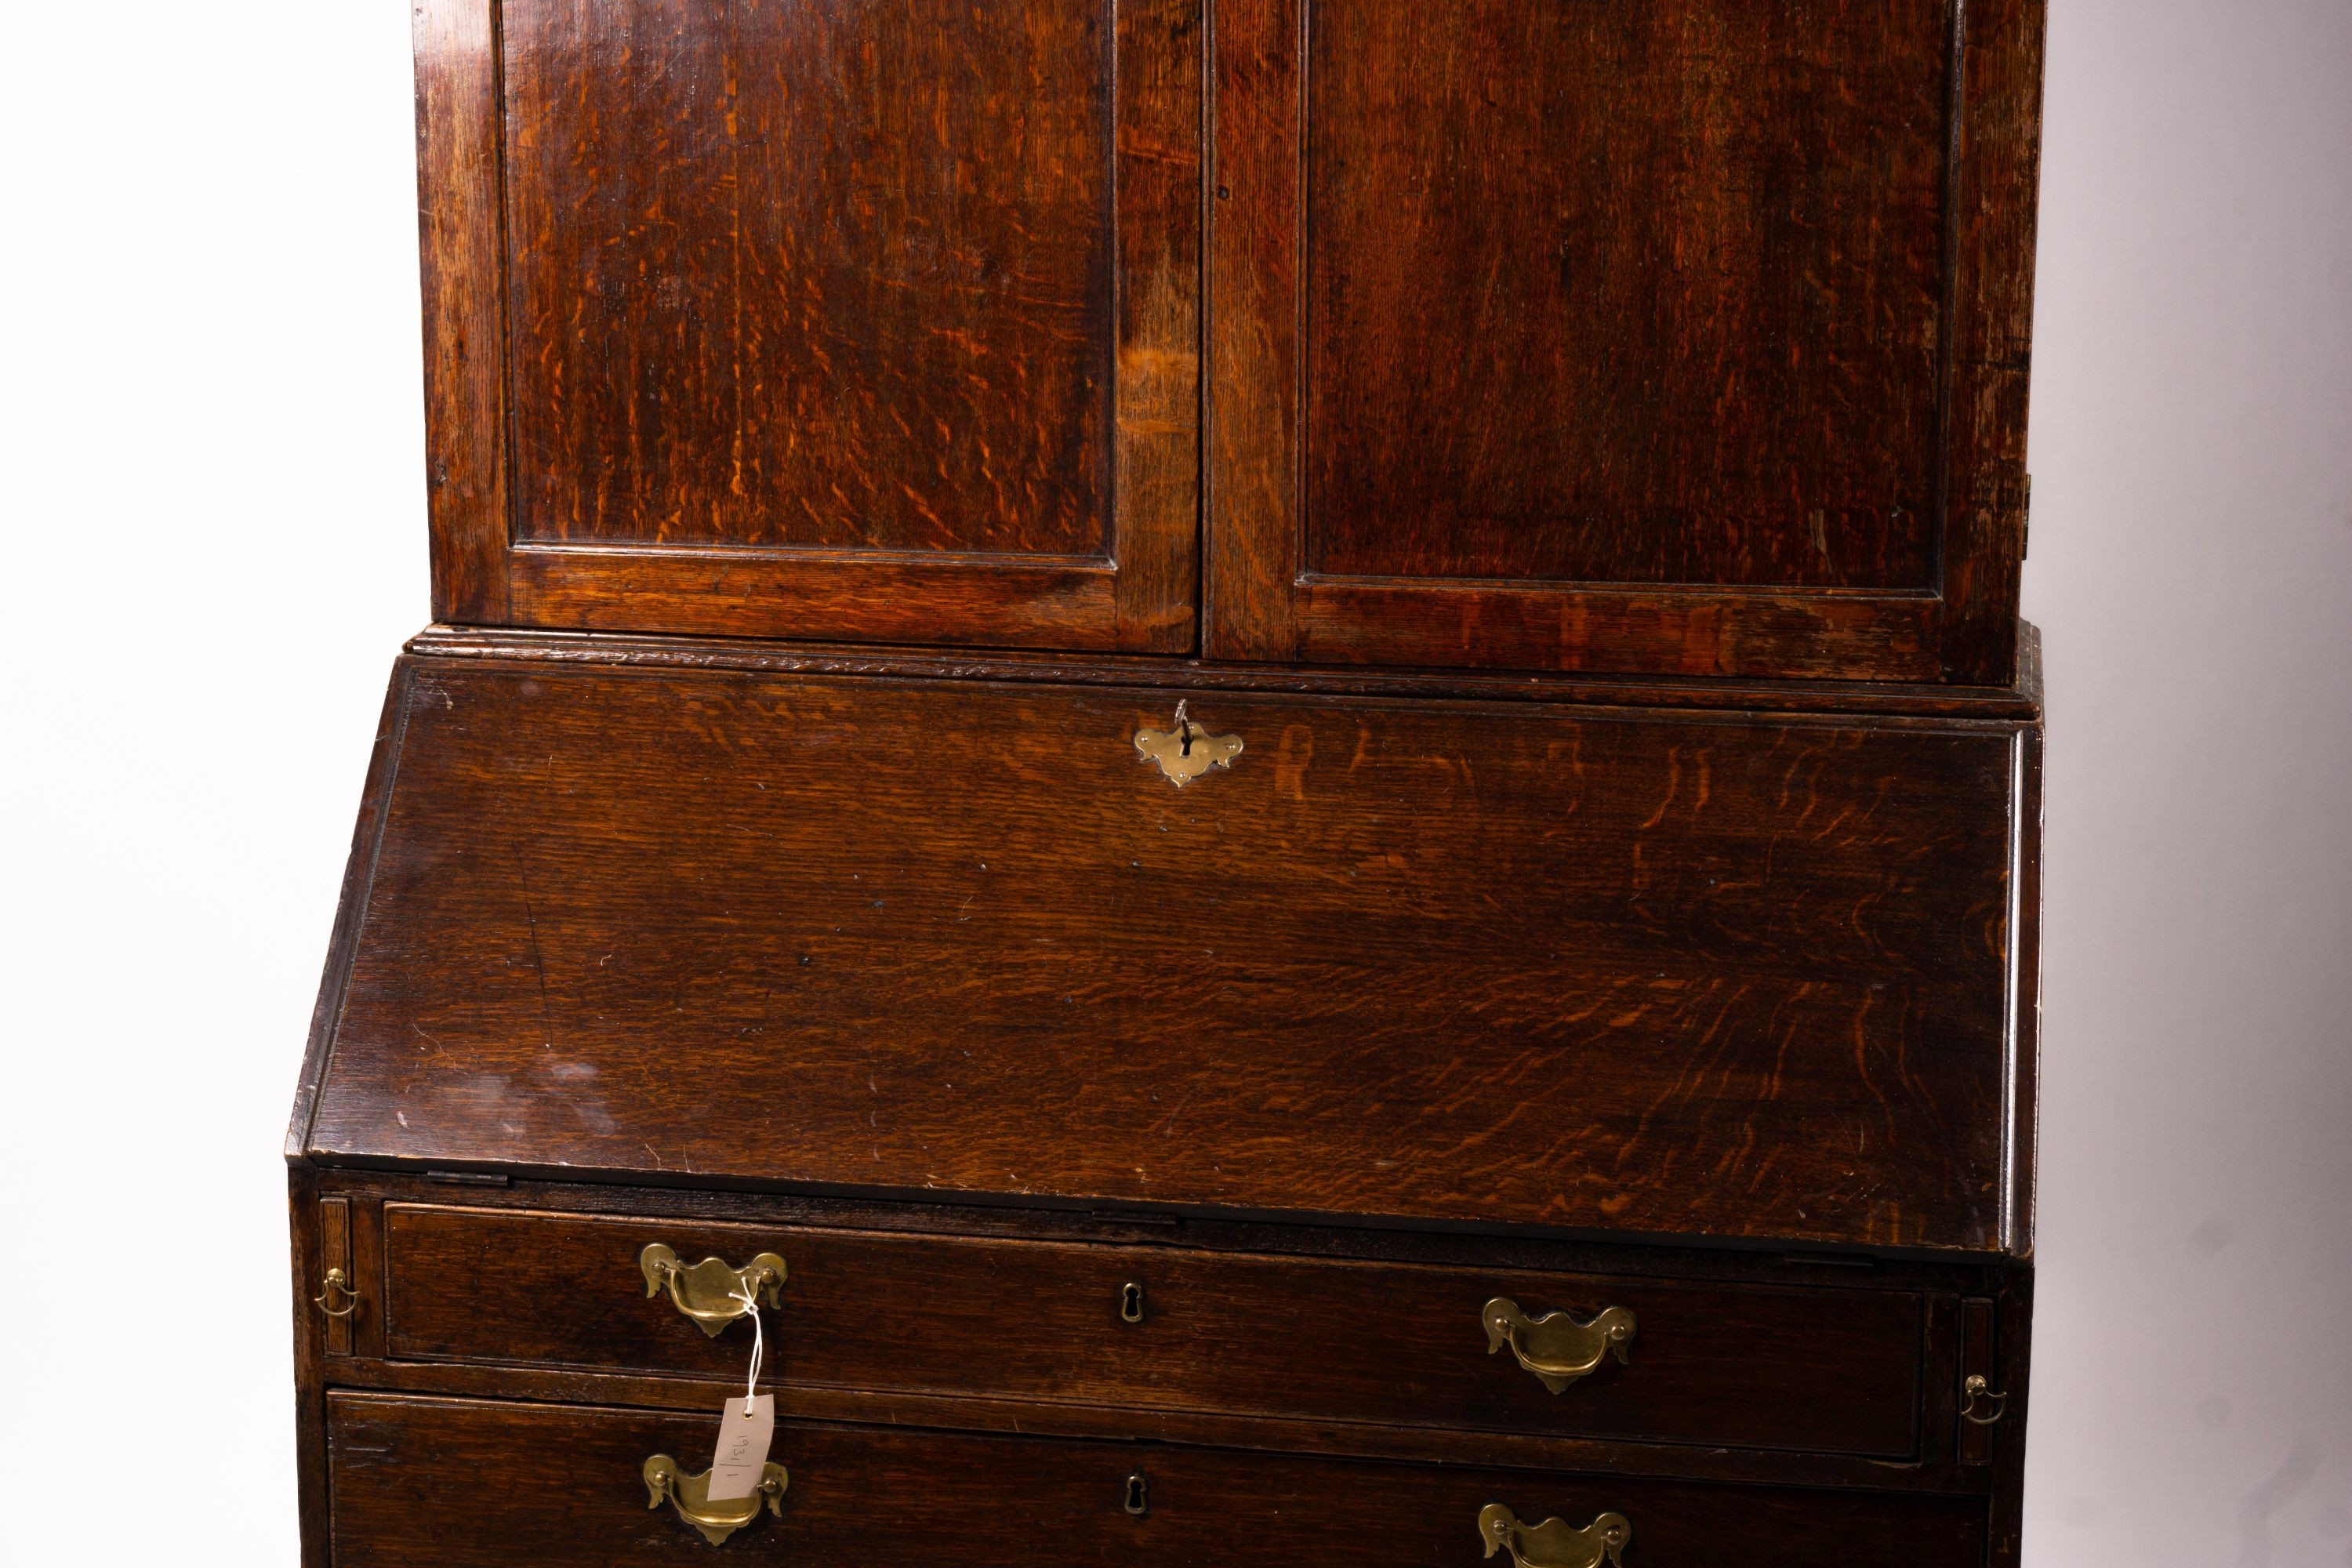 A George III oak bureau cabinet, width 108cm, depth 52cm, height 209cm